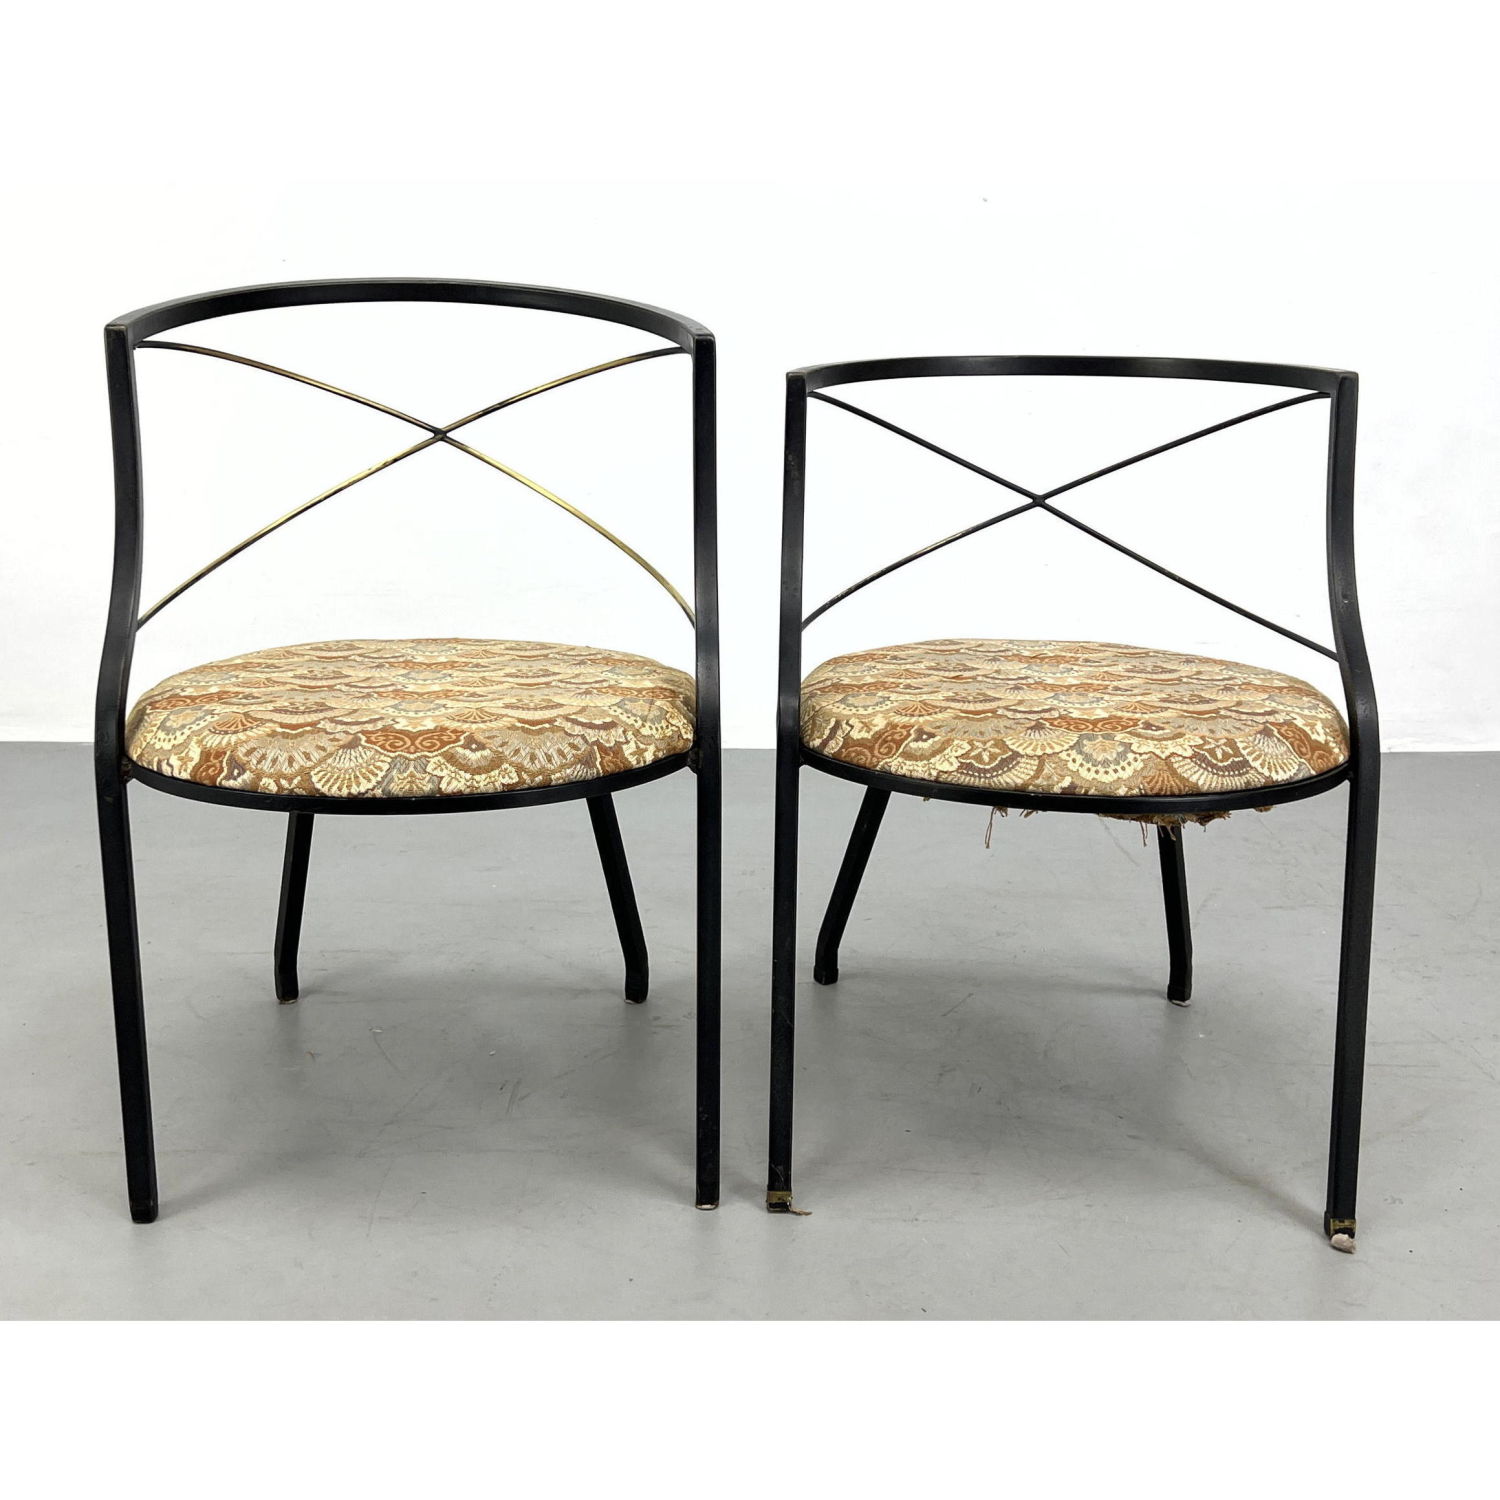 2 Maison Jansen Style Patio Chairs